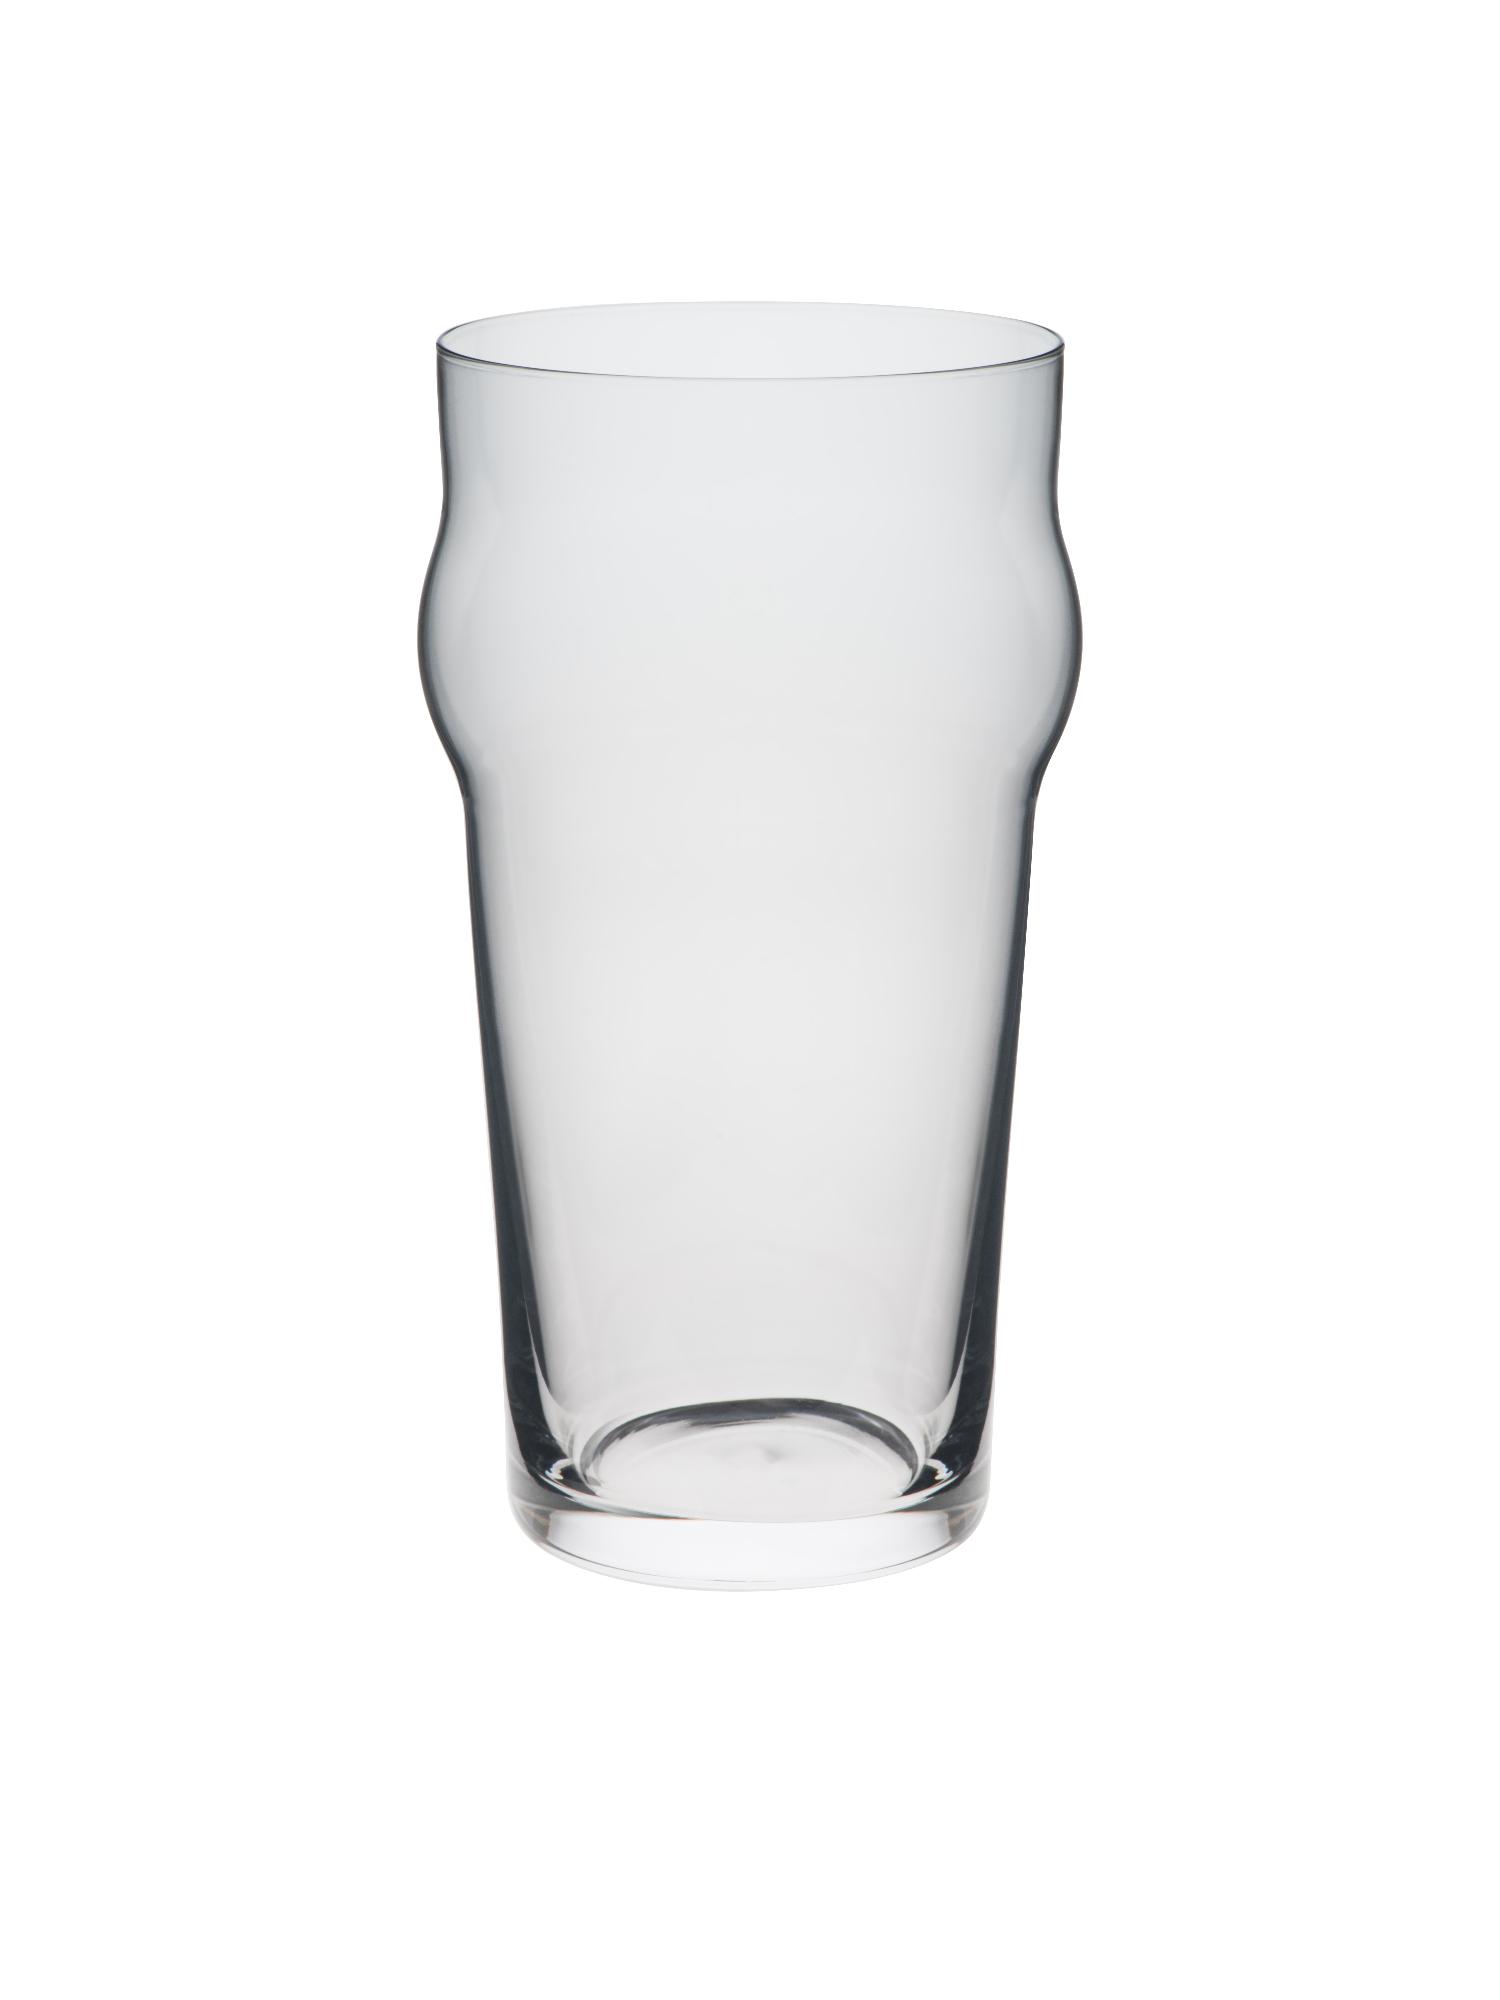 Pinta beer glass, 630ml